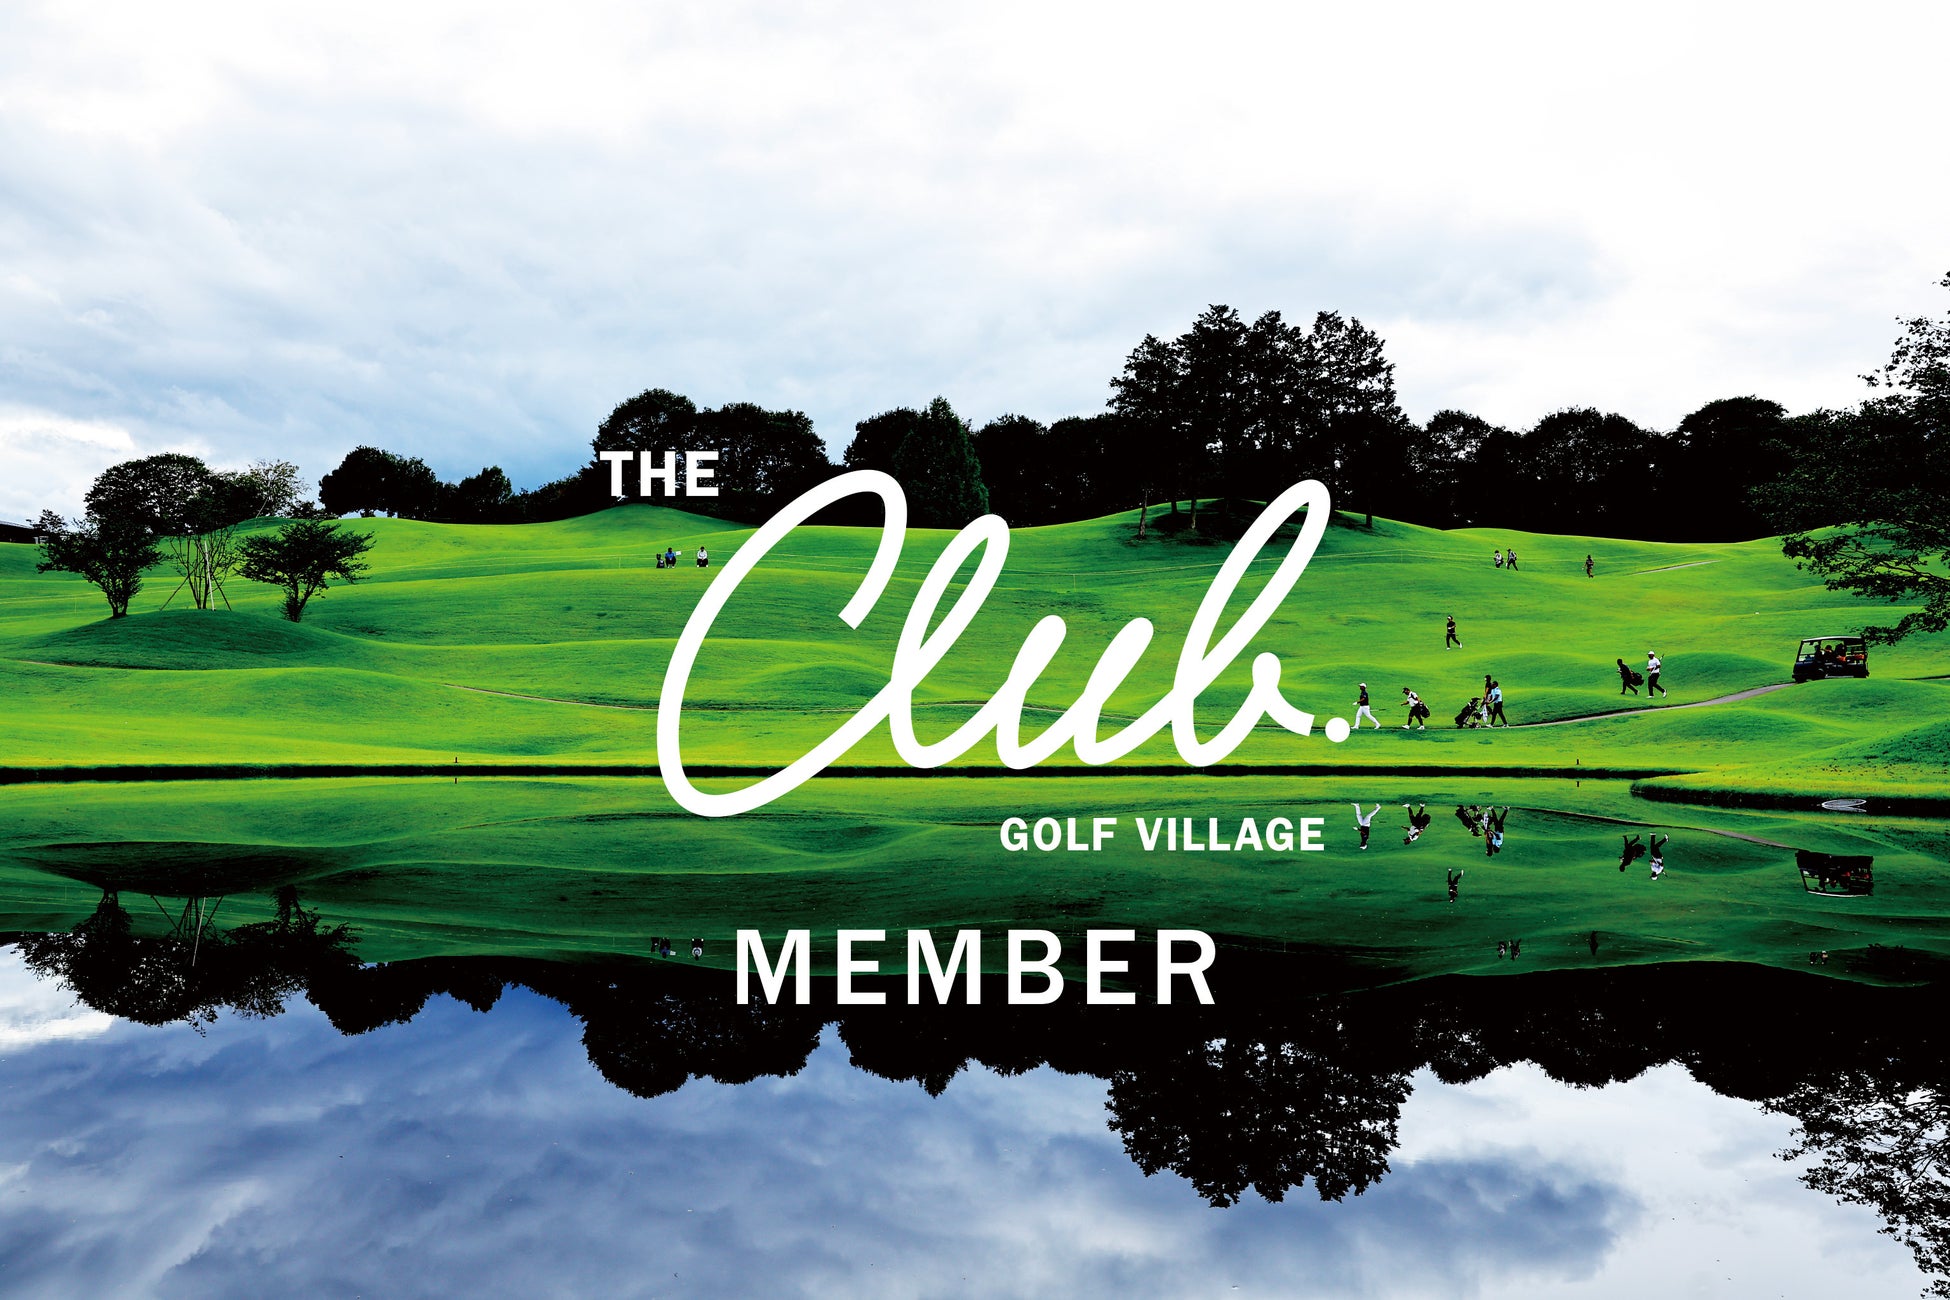 新たなゴルフカルチャーを創造する会員制ゴルフクラブ「THE CLUB golf village」第二次会員募集を開始！